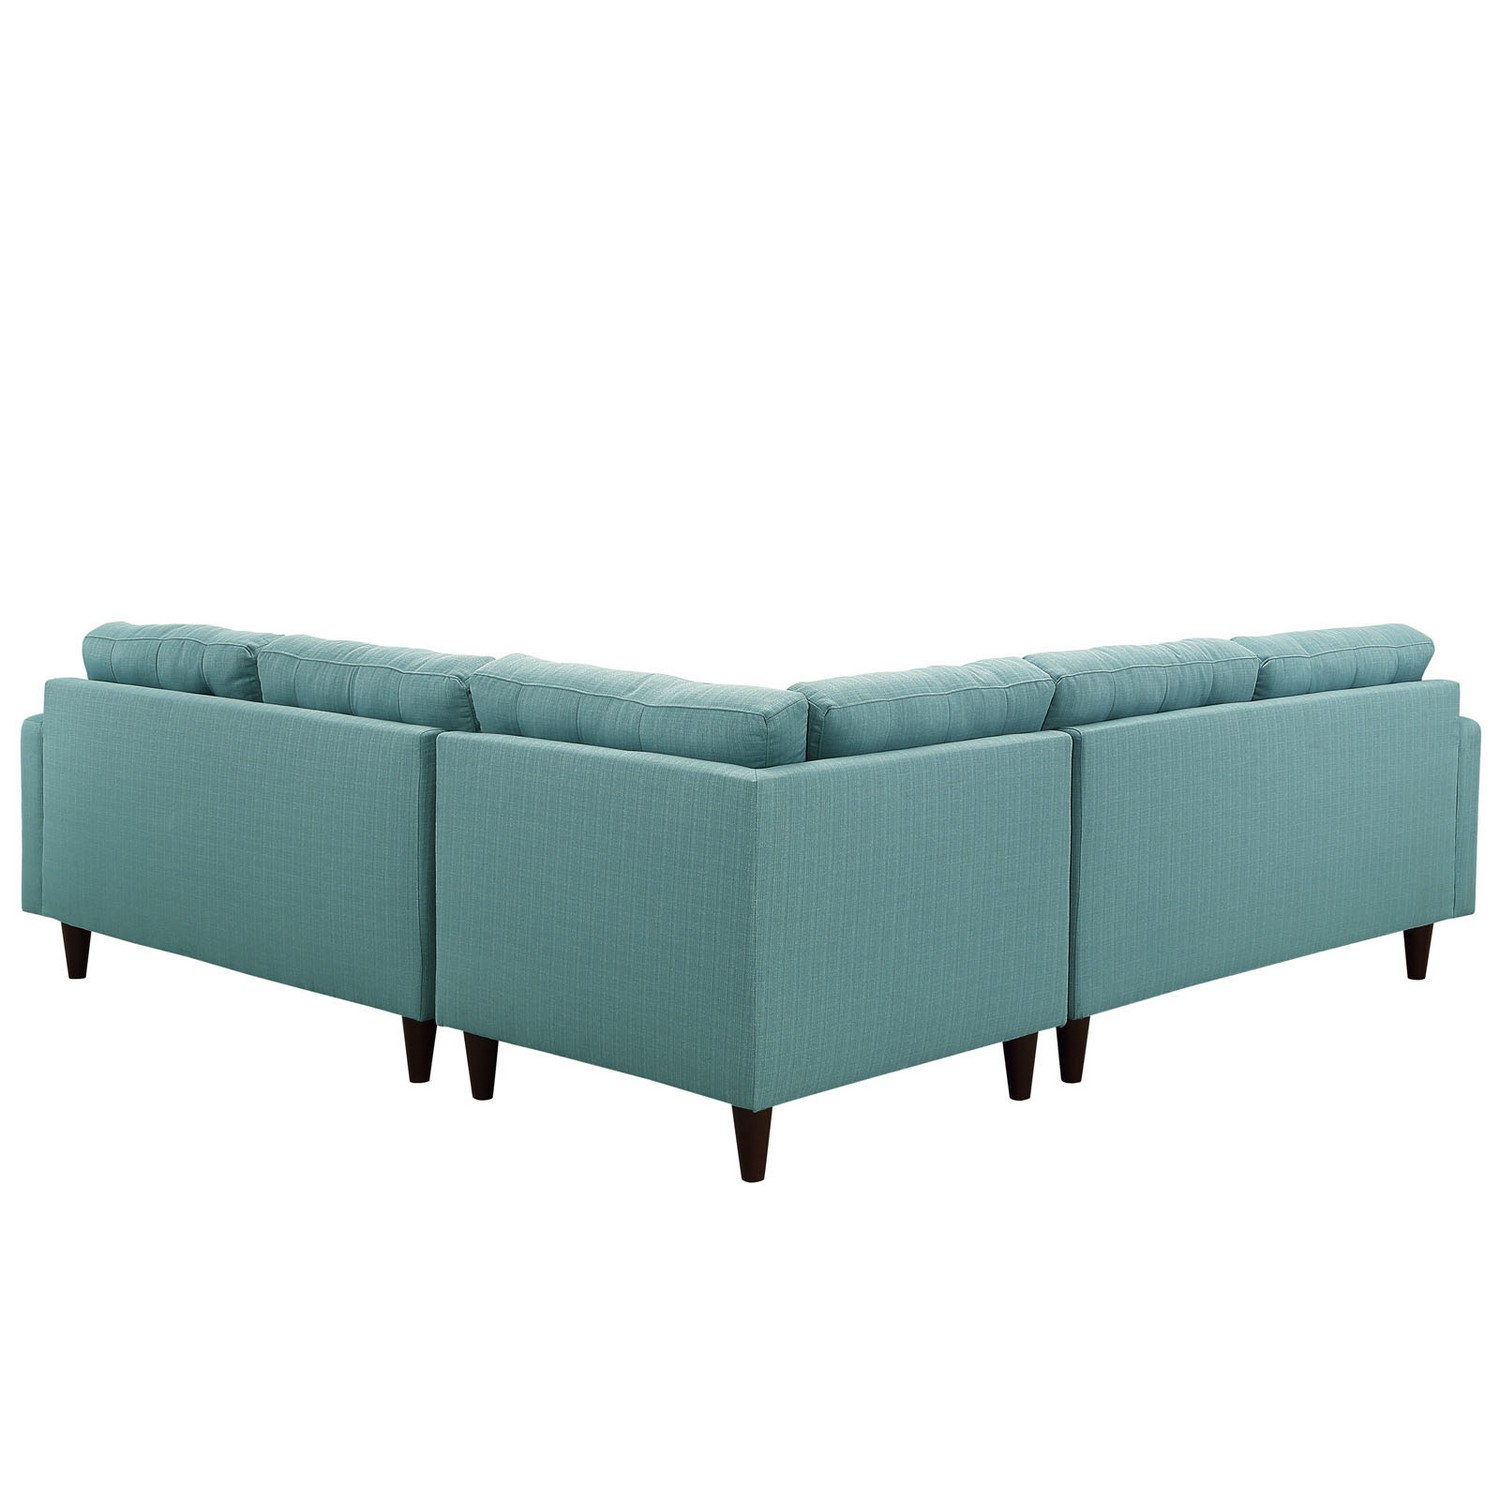 Modway Empress 3 Piece Fabric Sectional Sofa Set - Laguna